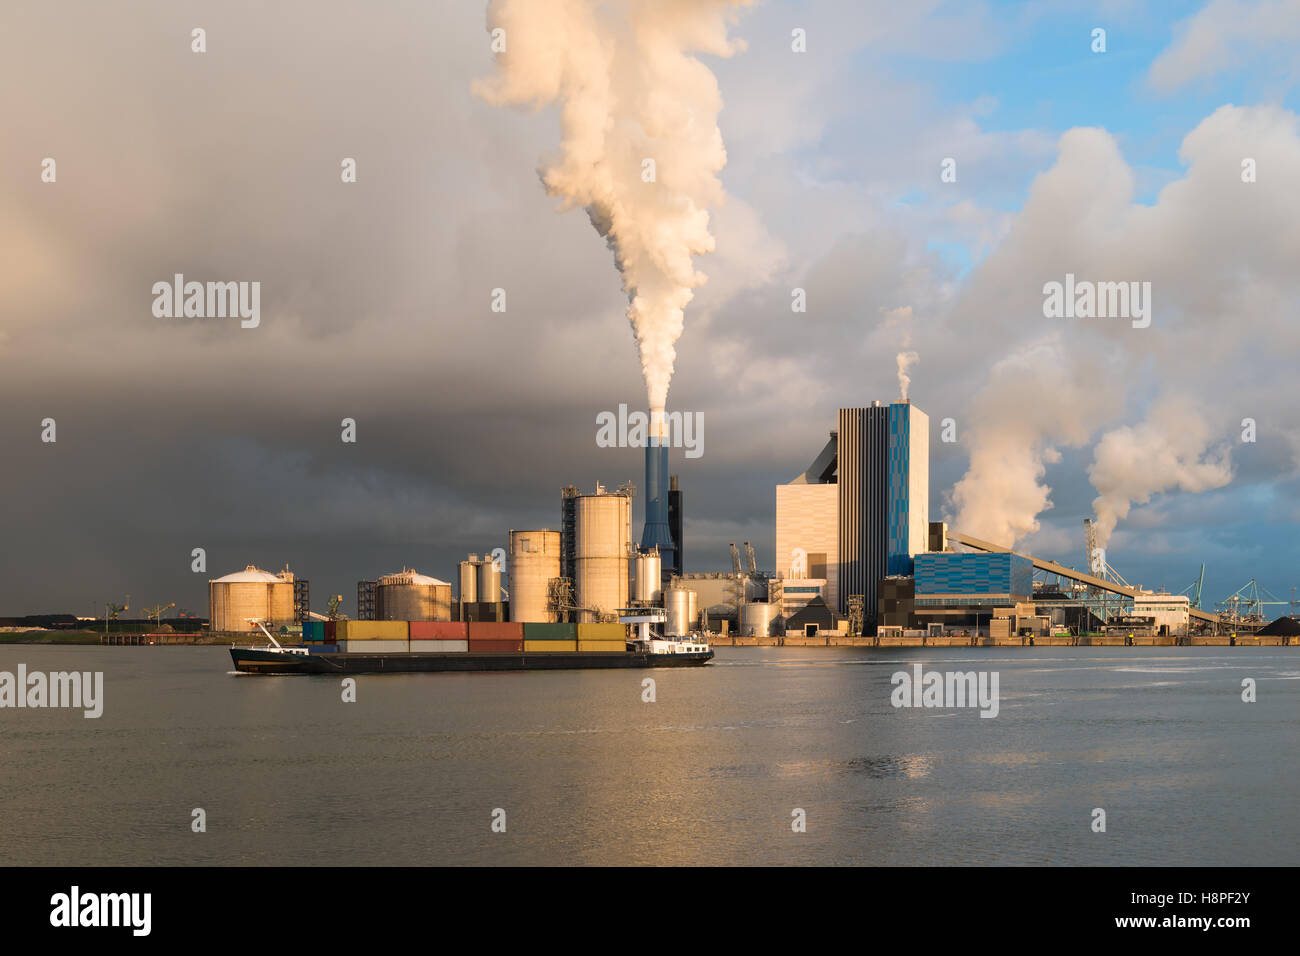 La fumée de l'industrie lourde est mis en lumière par le soleil. Tourné dans le domaine de l'industrie aux Pays-Bas l'Europoort de Rotterdam. Banque D'Images